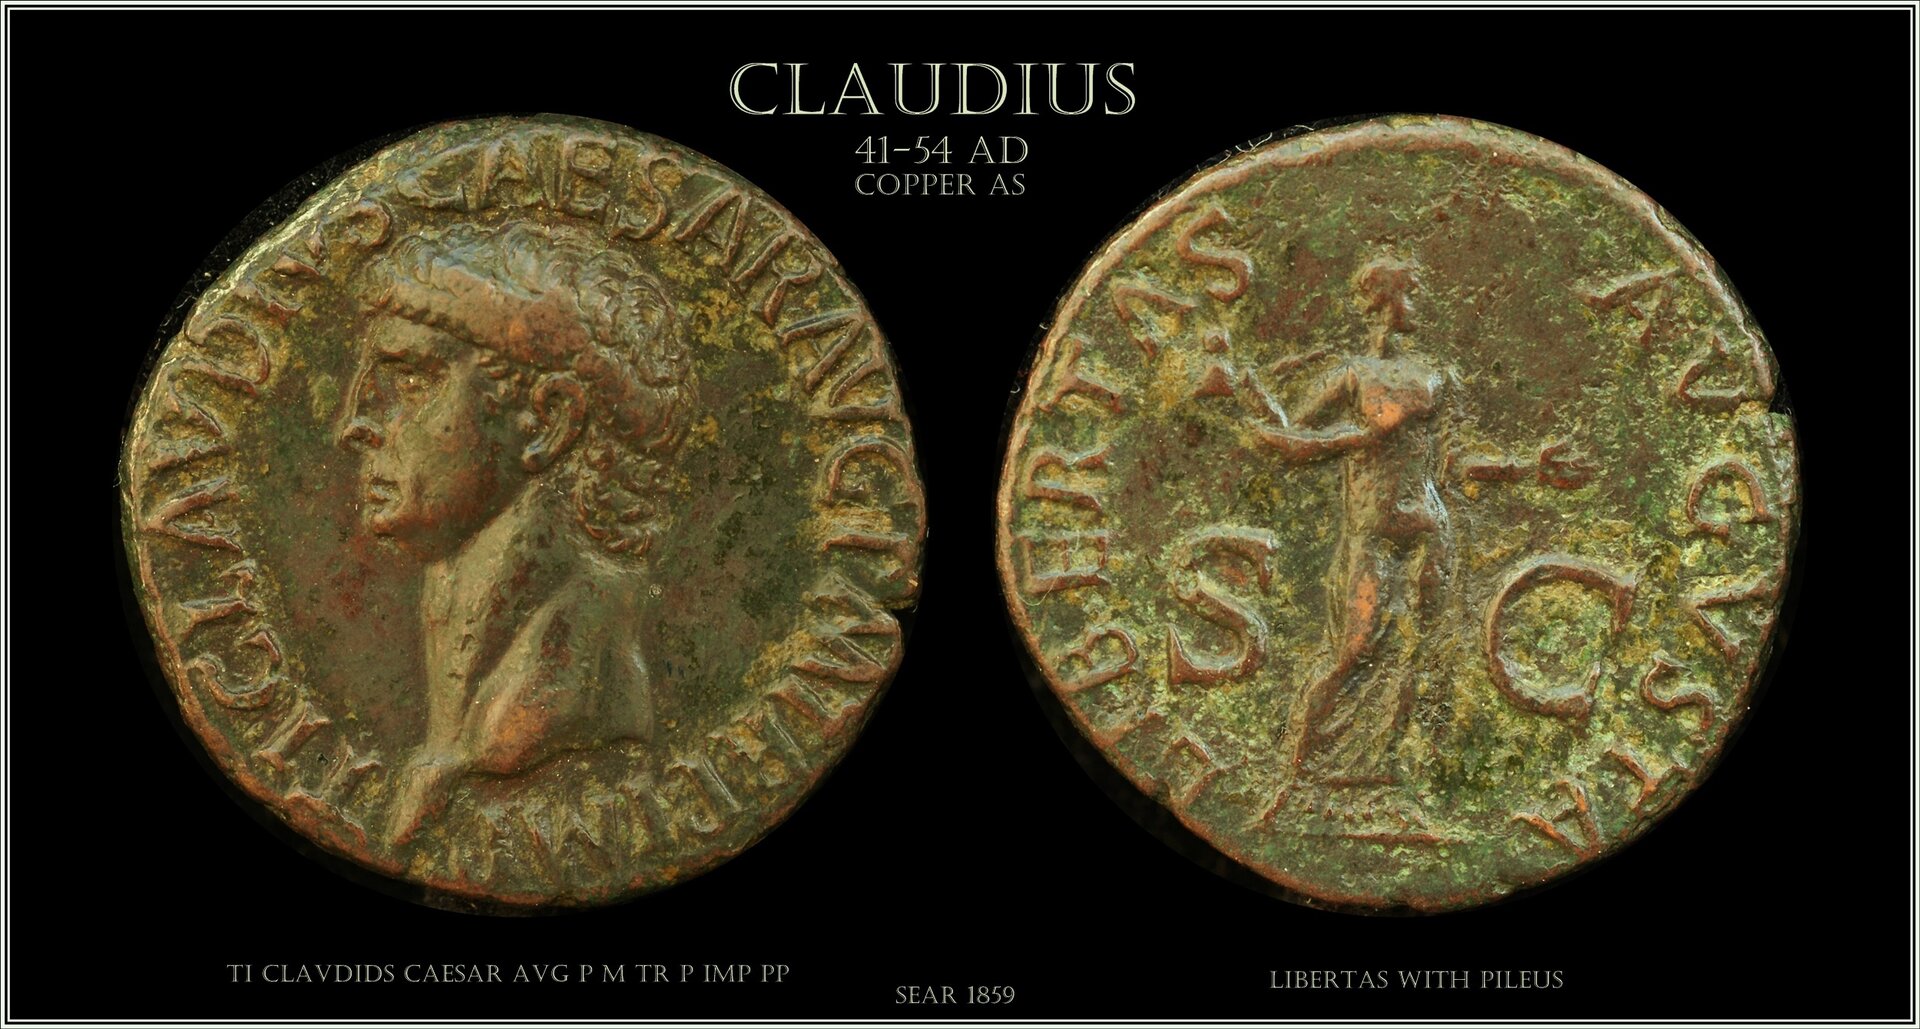 Sear 1859 Claudius as.jpeg